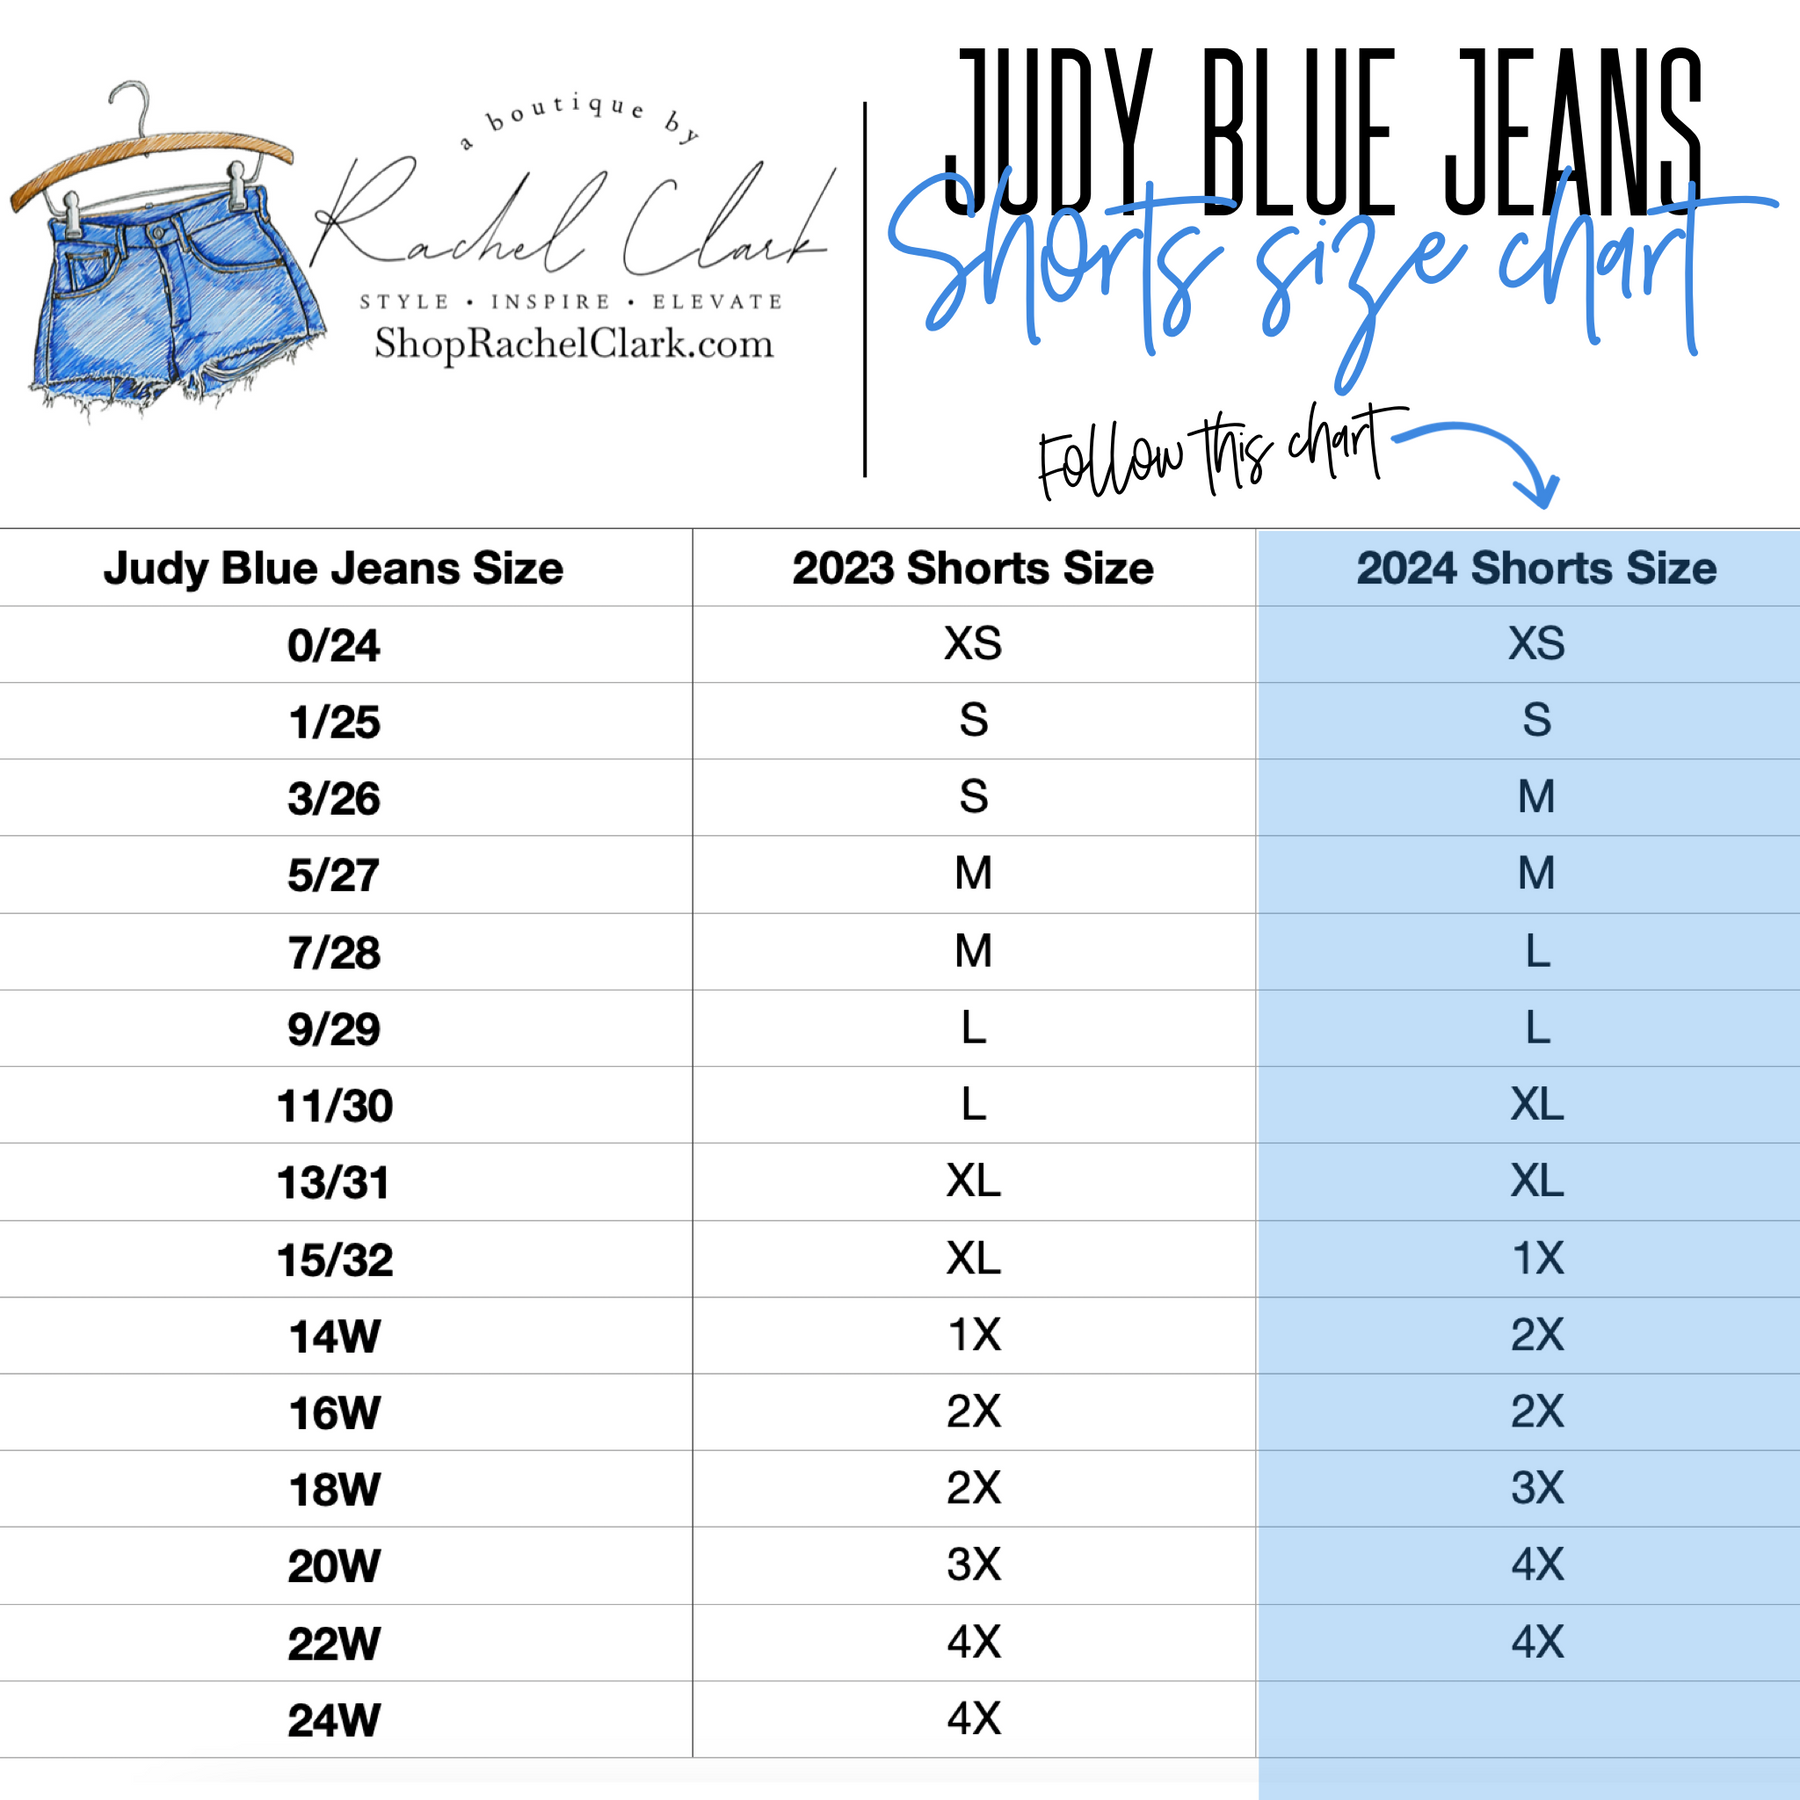 Judy Blue Tummy Control Bermuda Shorts - Red